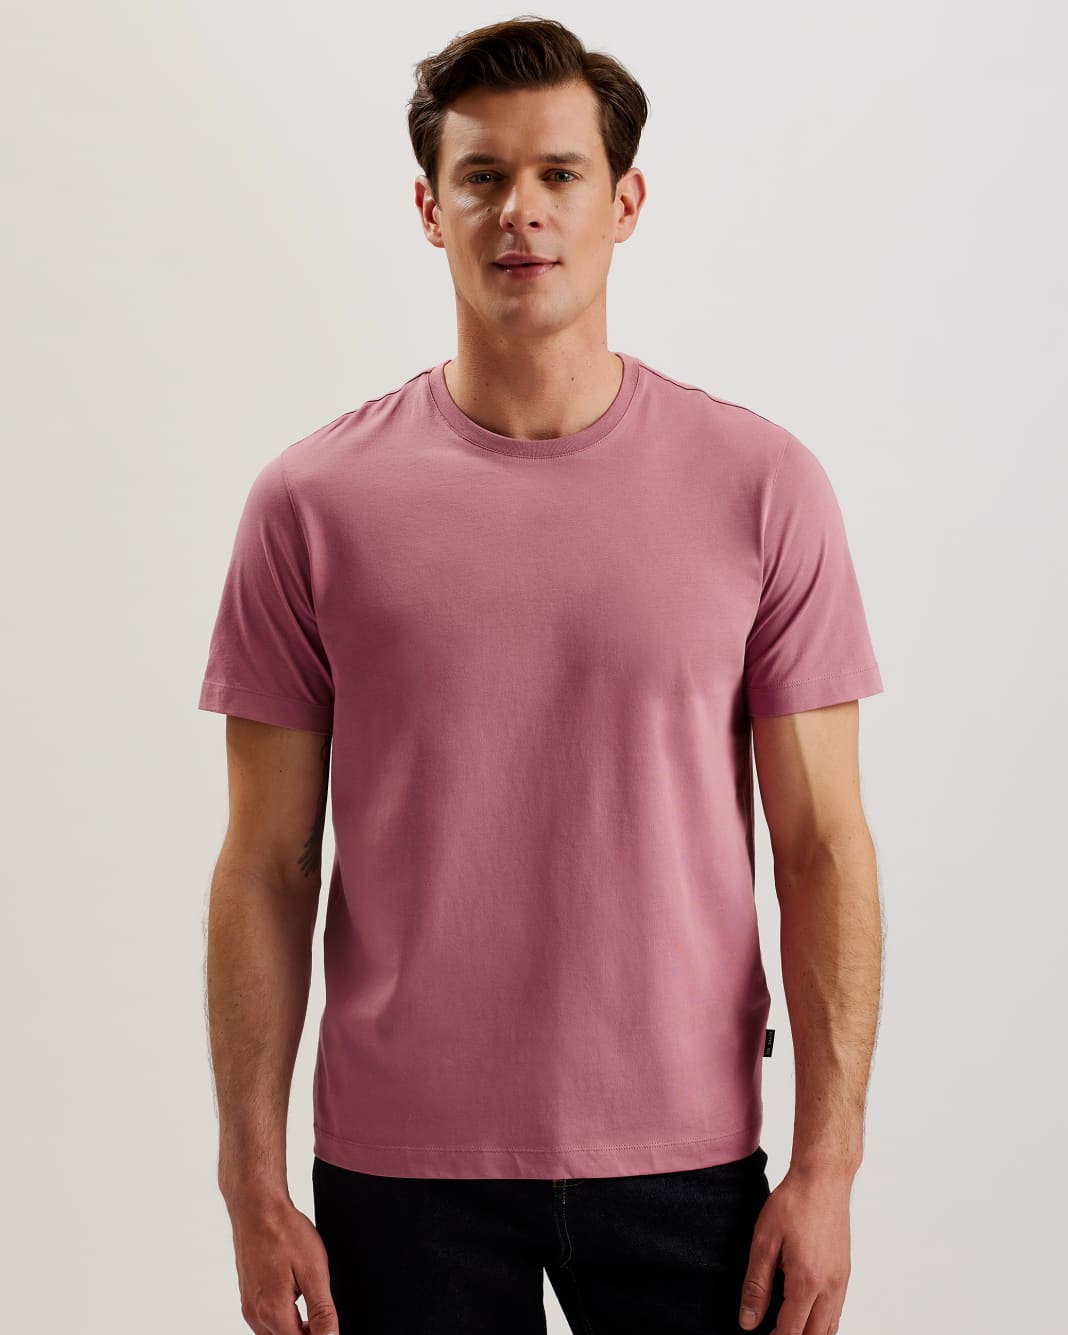 테드베이커 Tedbaker Short Sleeve Regular Fit Plain T-shirt,Pink